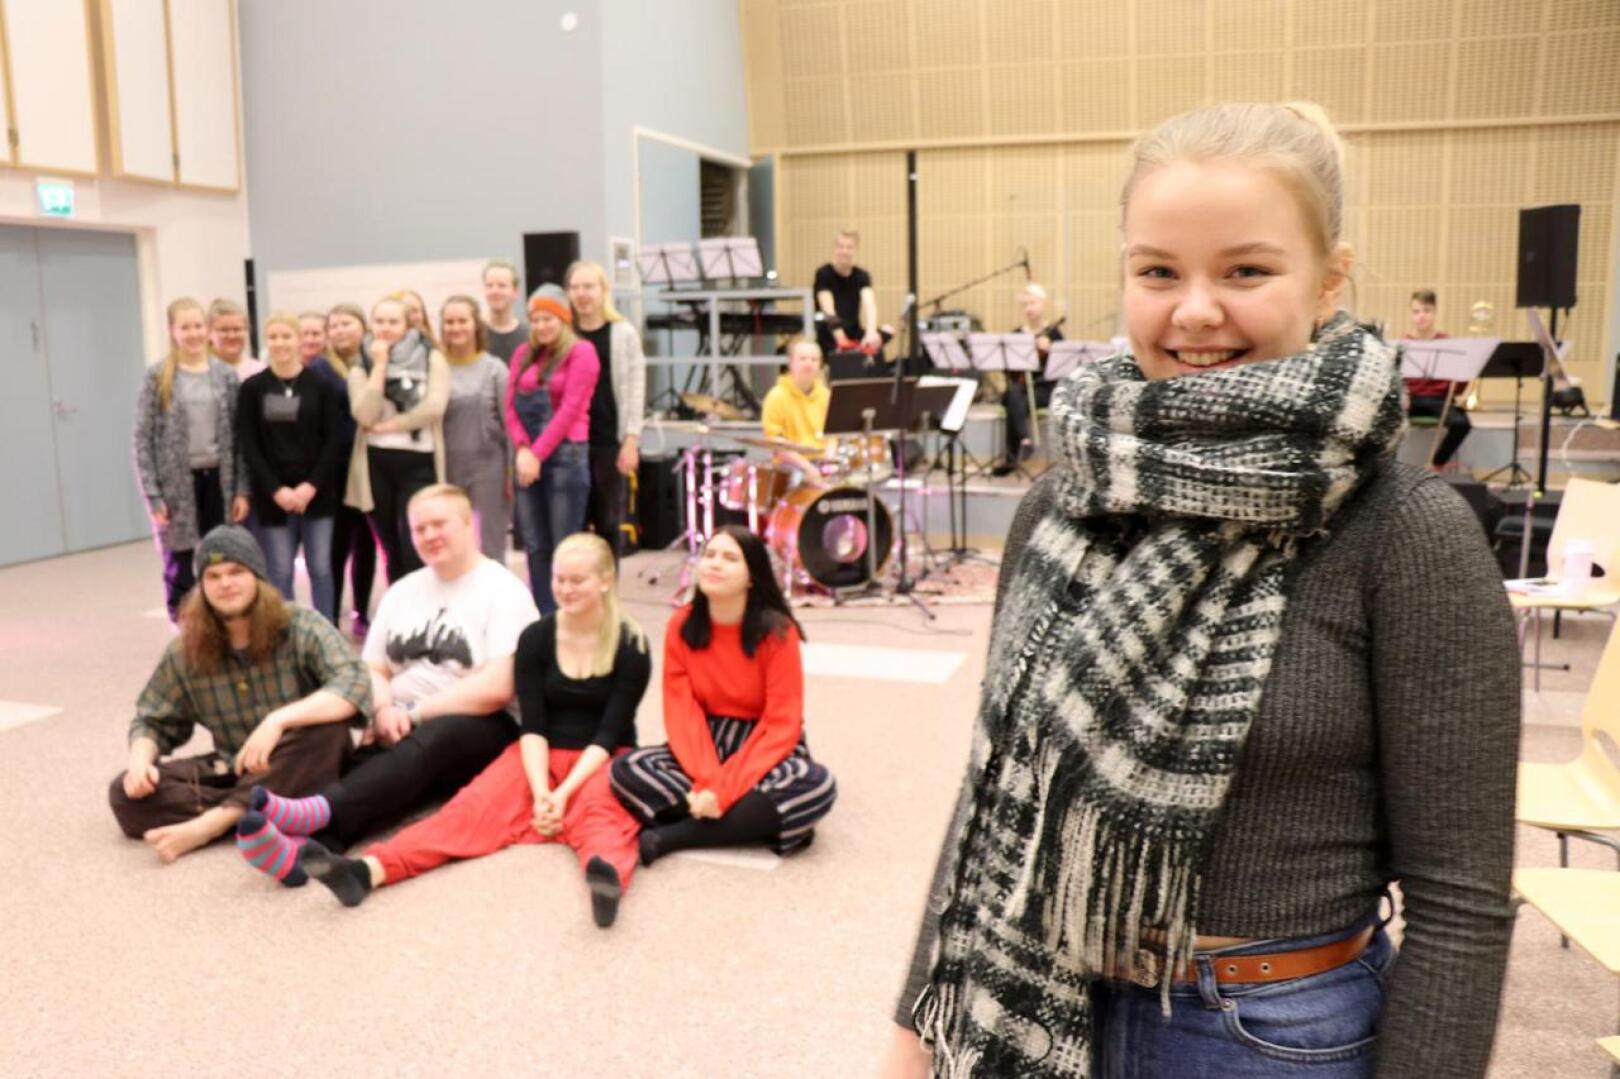 Kaustisen musiikkilukion kevään Oliver!-musikaalissa lavalla nähdään kymmeniä nuoria. Saana Heikkinen esittää musikaalin nimiroolia.